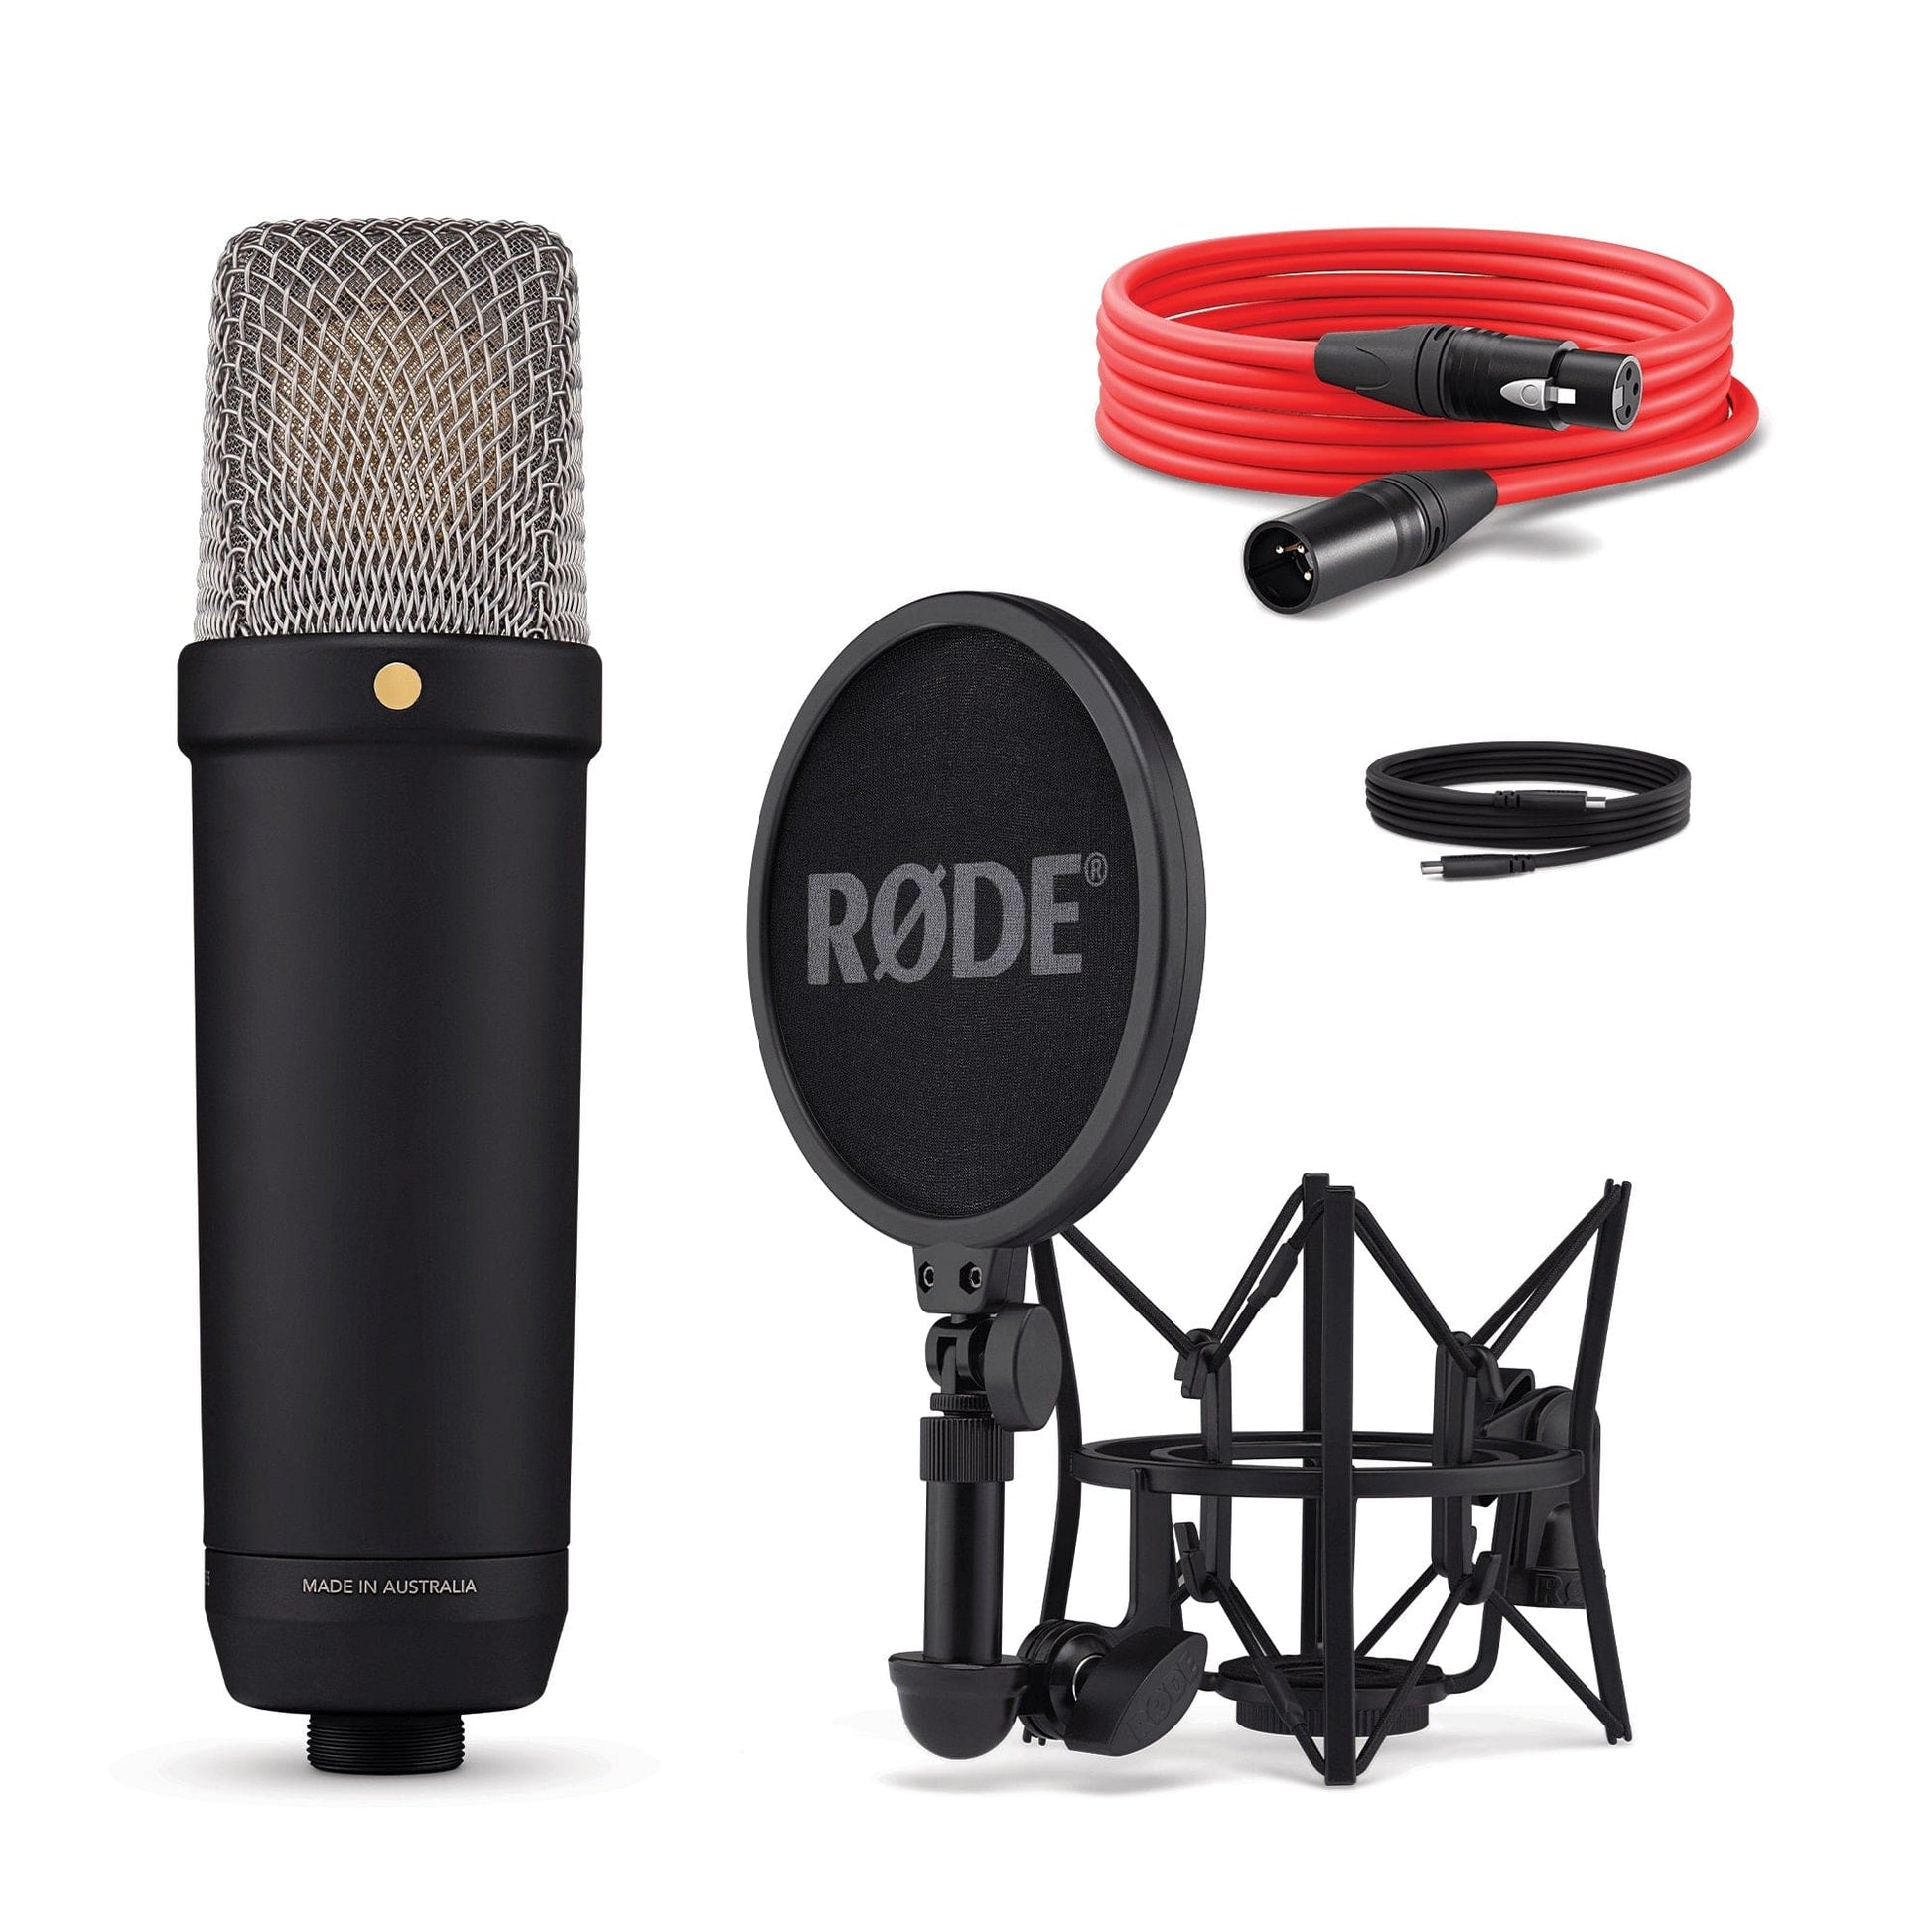 RØDE NT1 Signature Series Studio Condenser Microphone